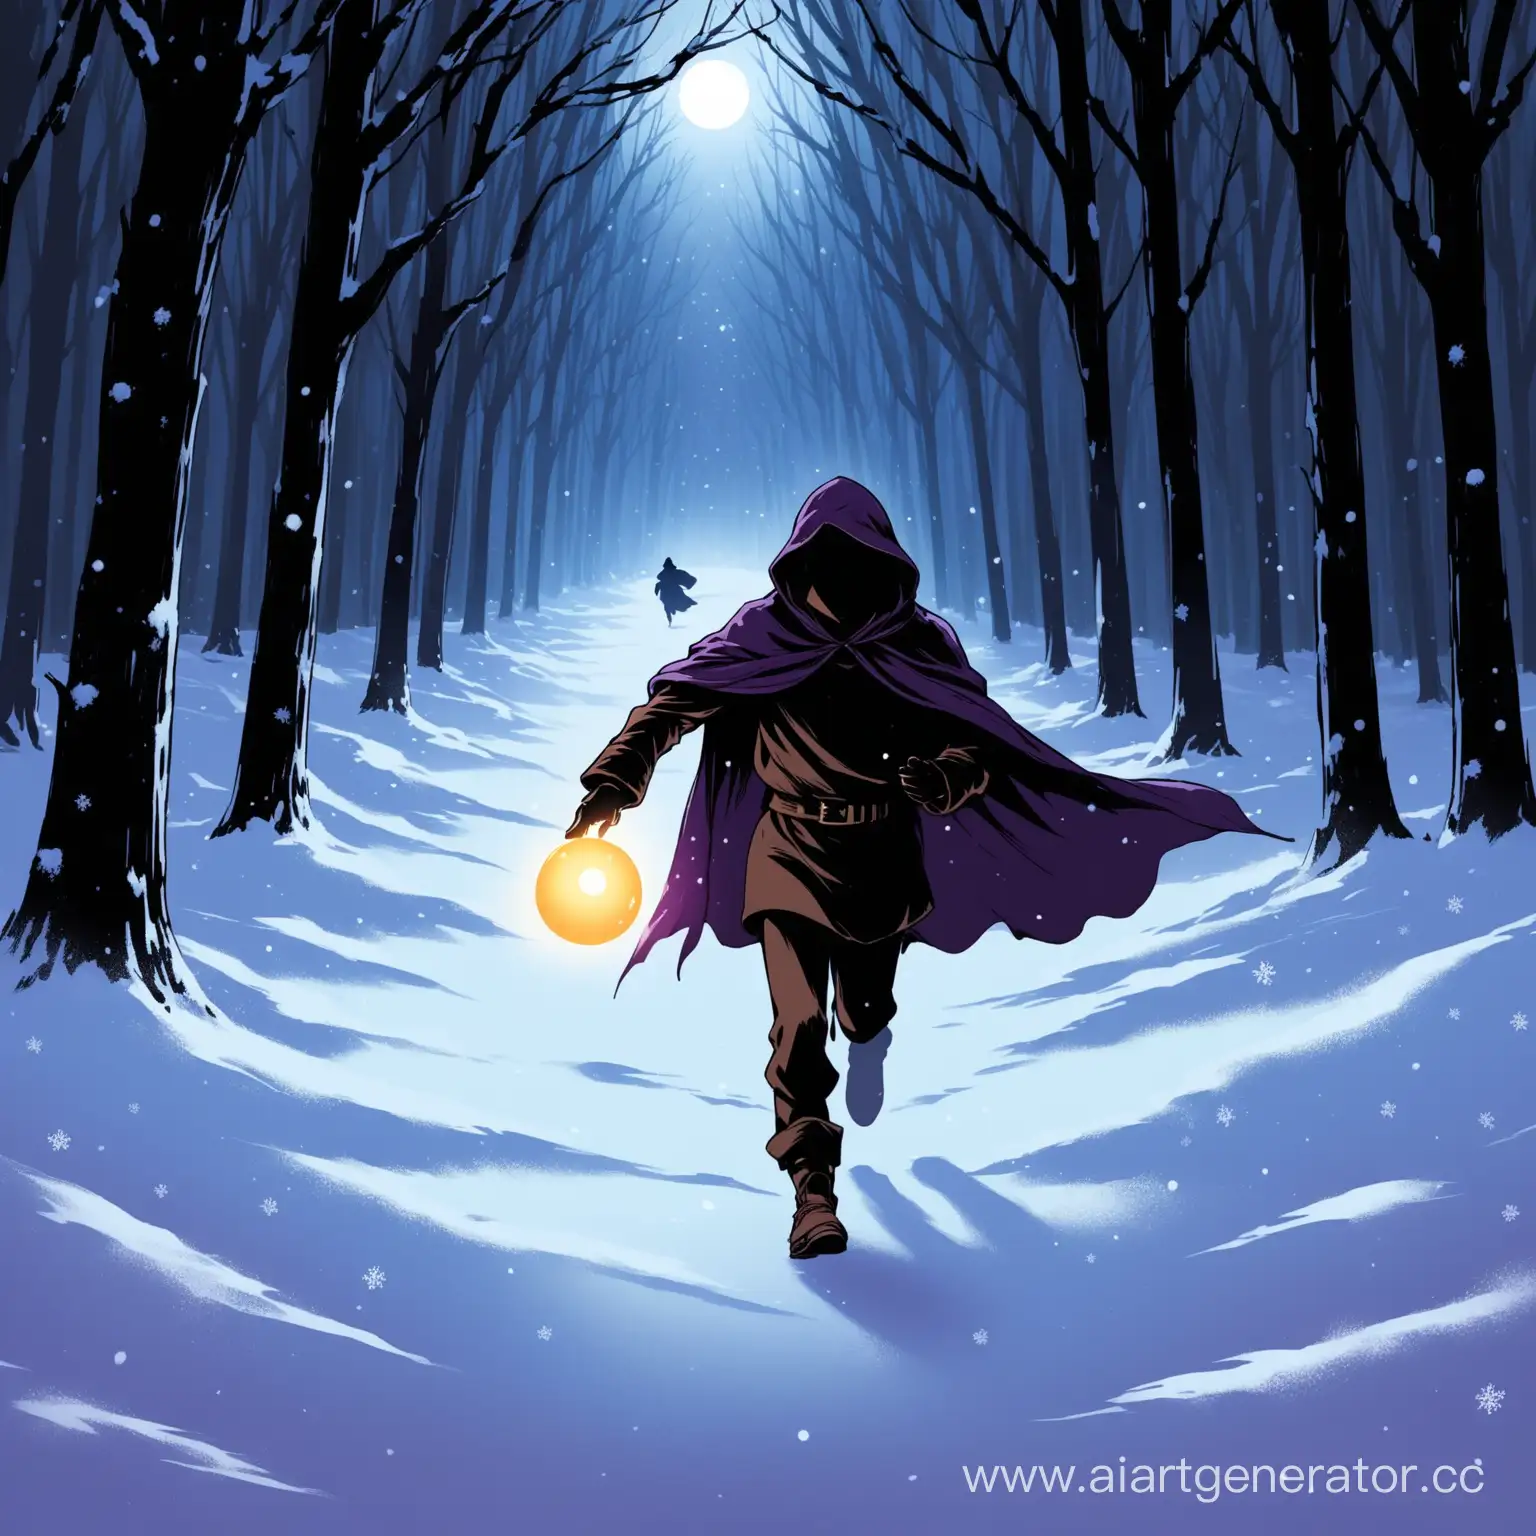 Русый парень,лет 17, в темно-фиолетовой мантии с светящимся маленьким шаром в руке ,убегает по зимнему темному лесу от темных силуэтов в мантии